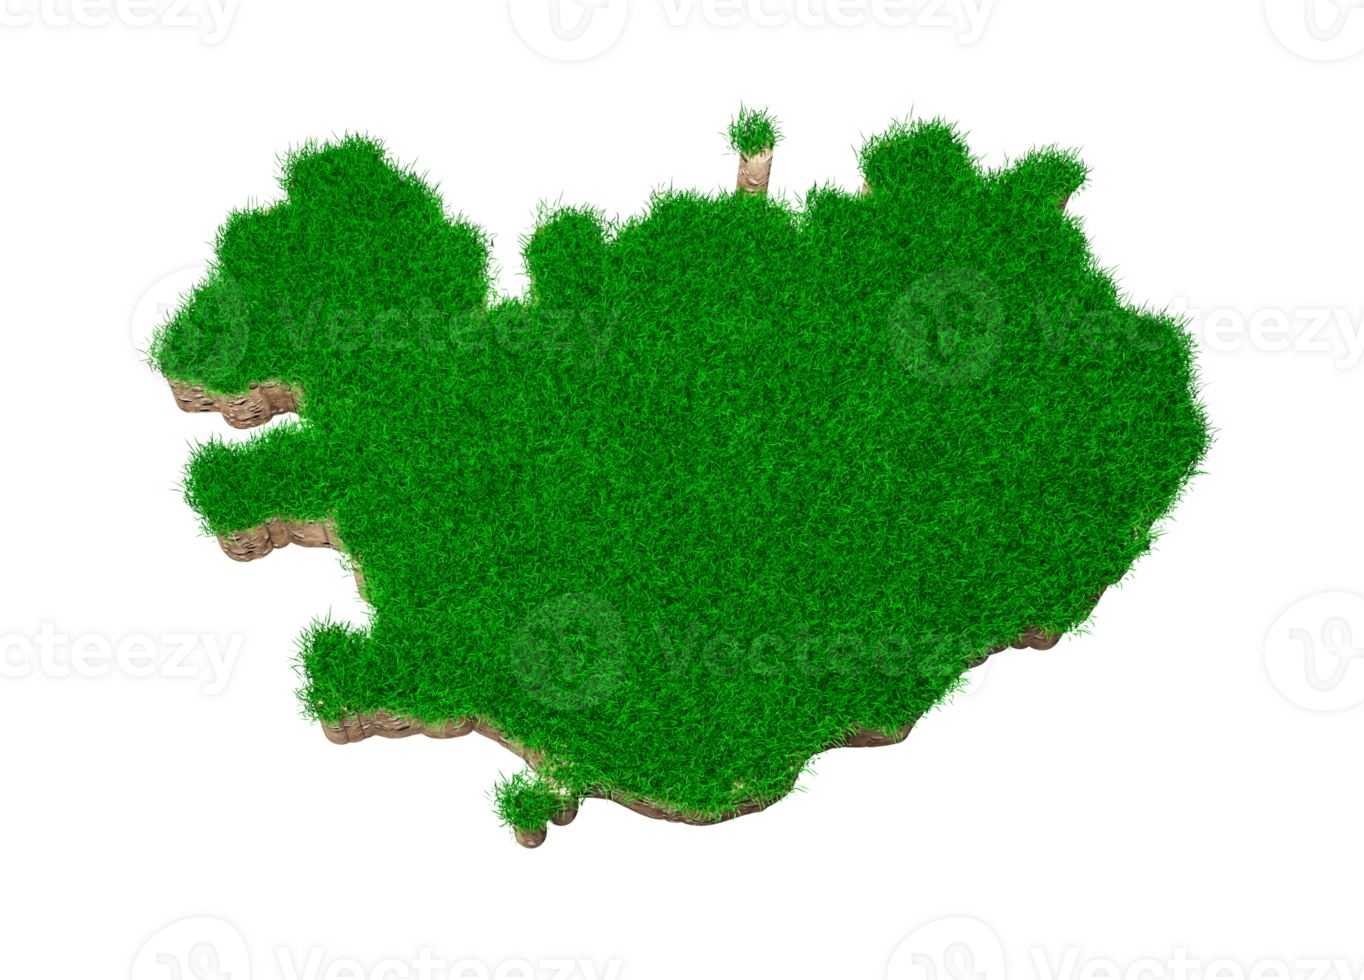 island karte boden land geologie querschnitt mit grünem gras draufsicht 3d illustration png